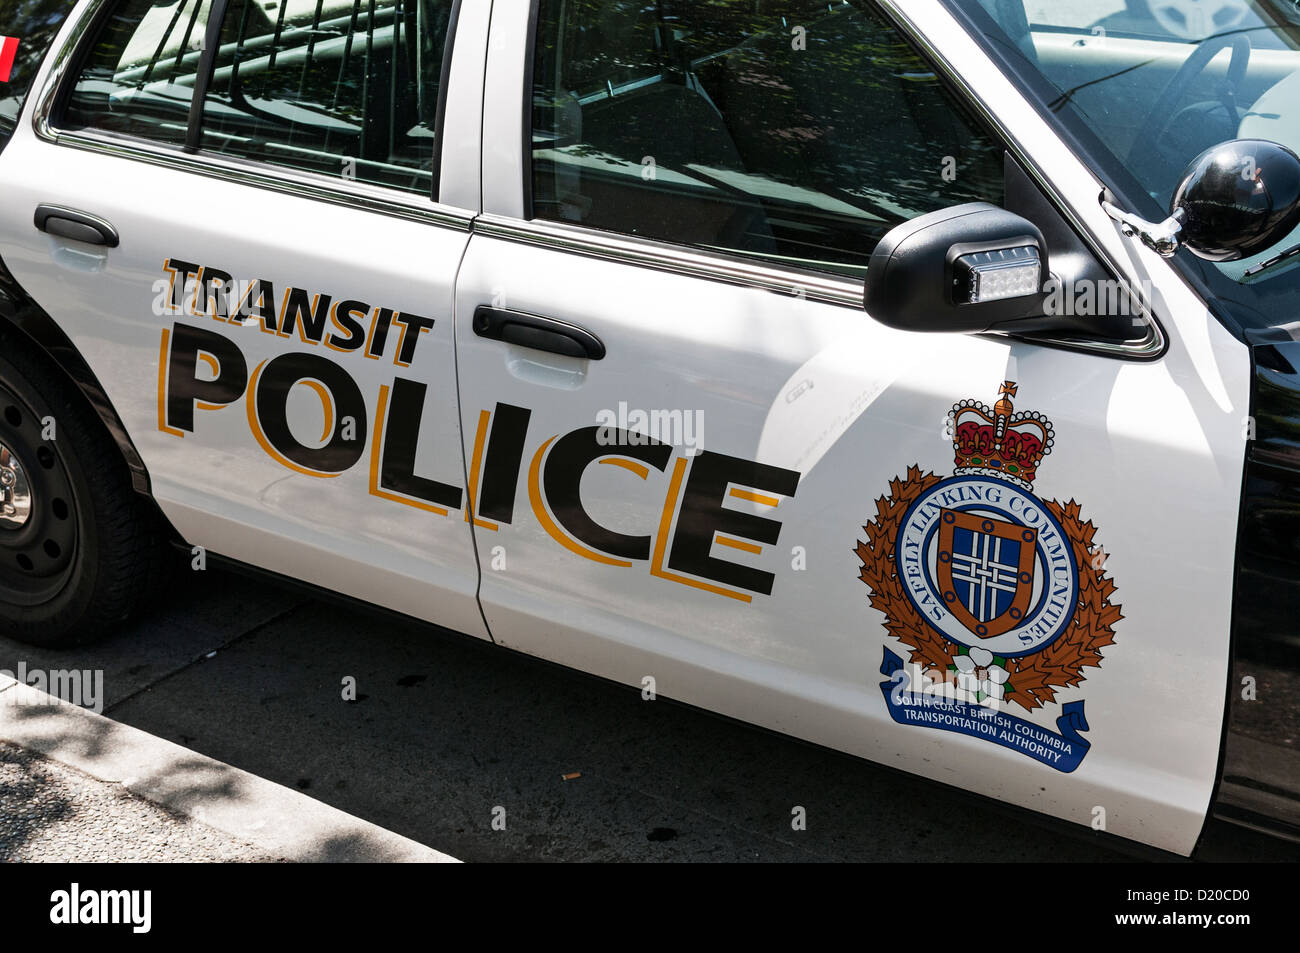 British Columbia di transito degli ufficiali di polizia , Canada il primo transito servizio di polizia, hanno gli stessi poteri di polizia regolari. Foto Stock